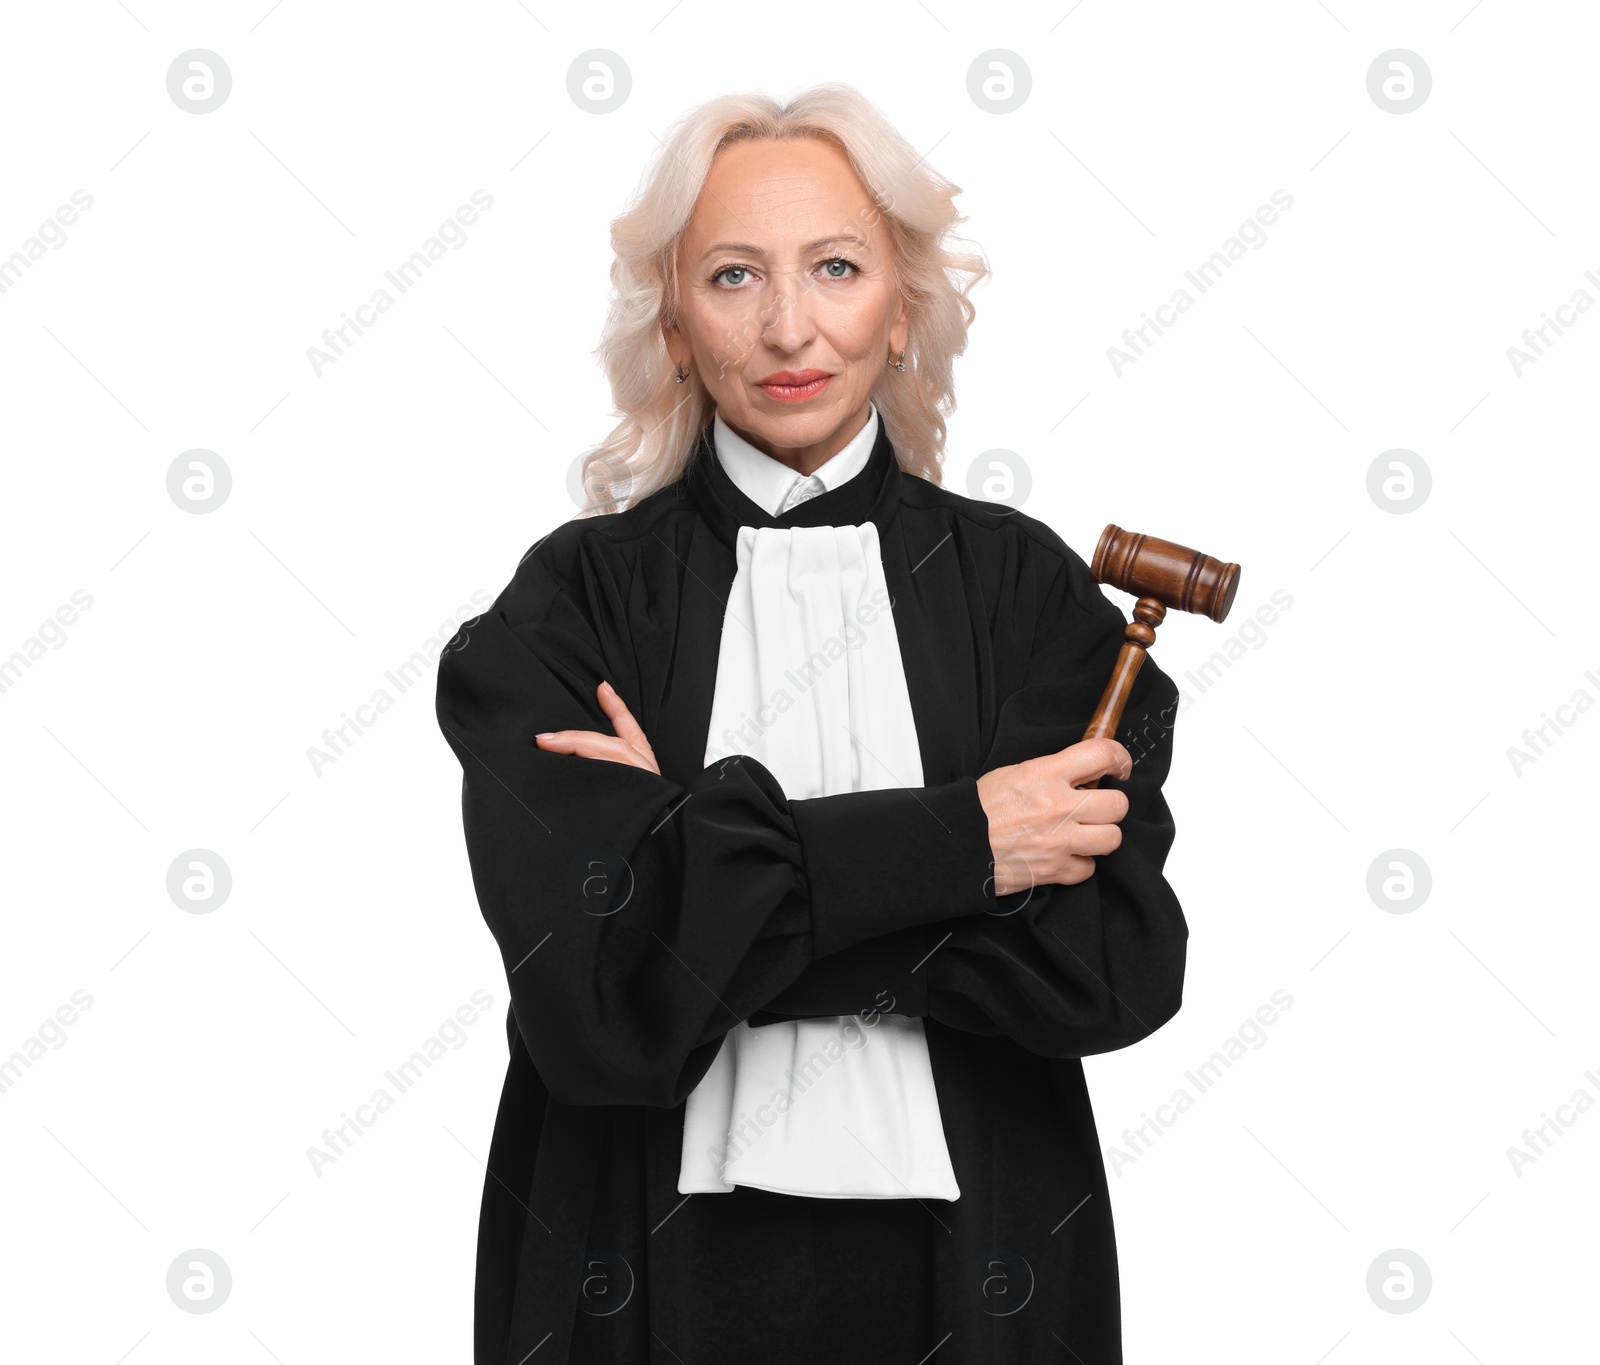 Photo of Senior judge with gavel on white background